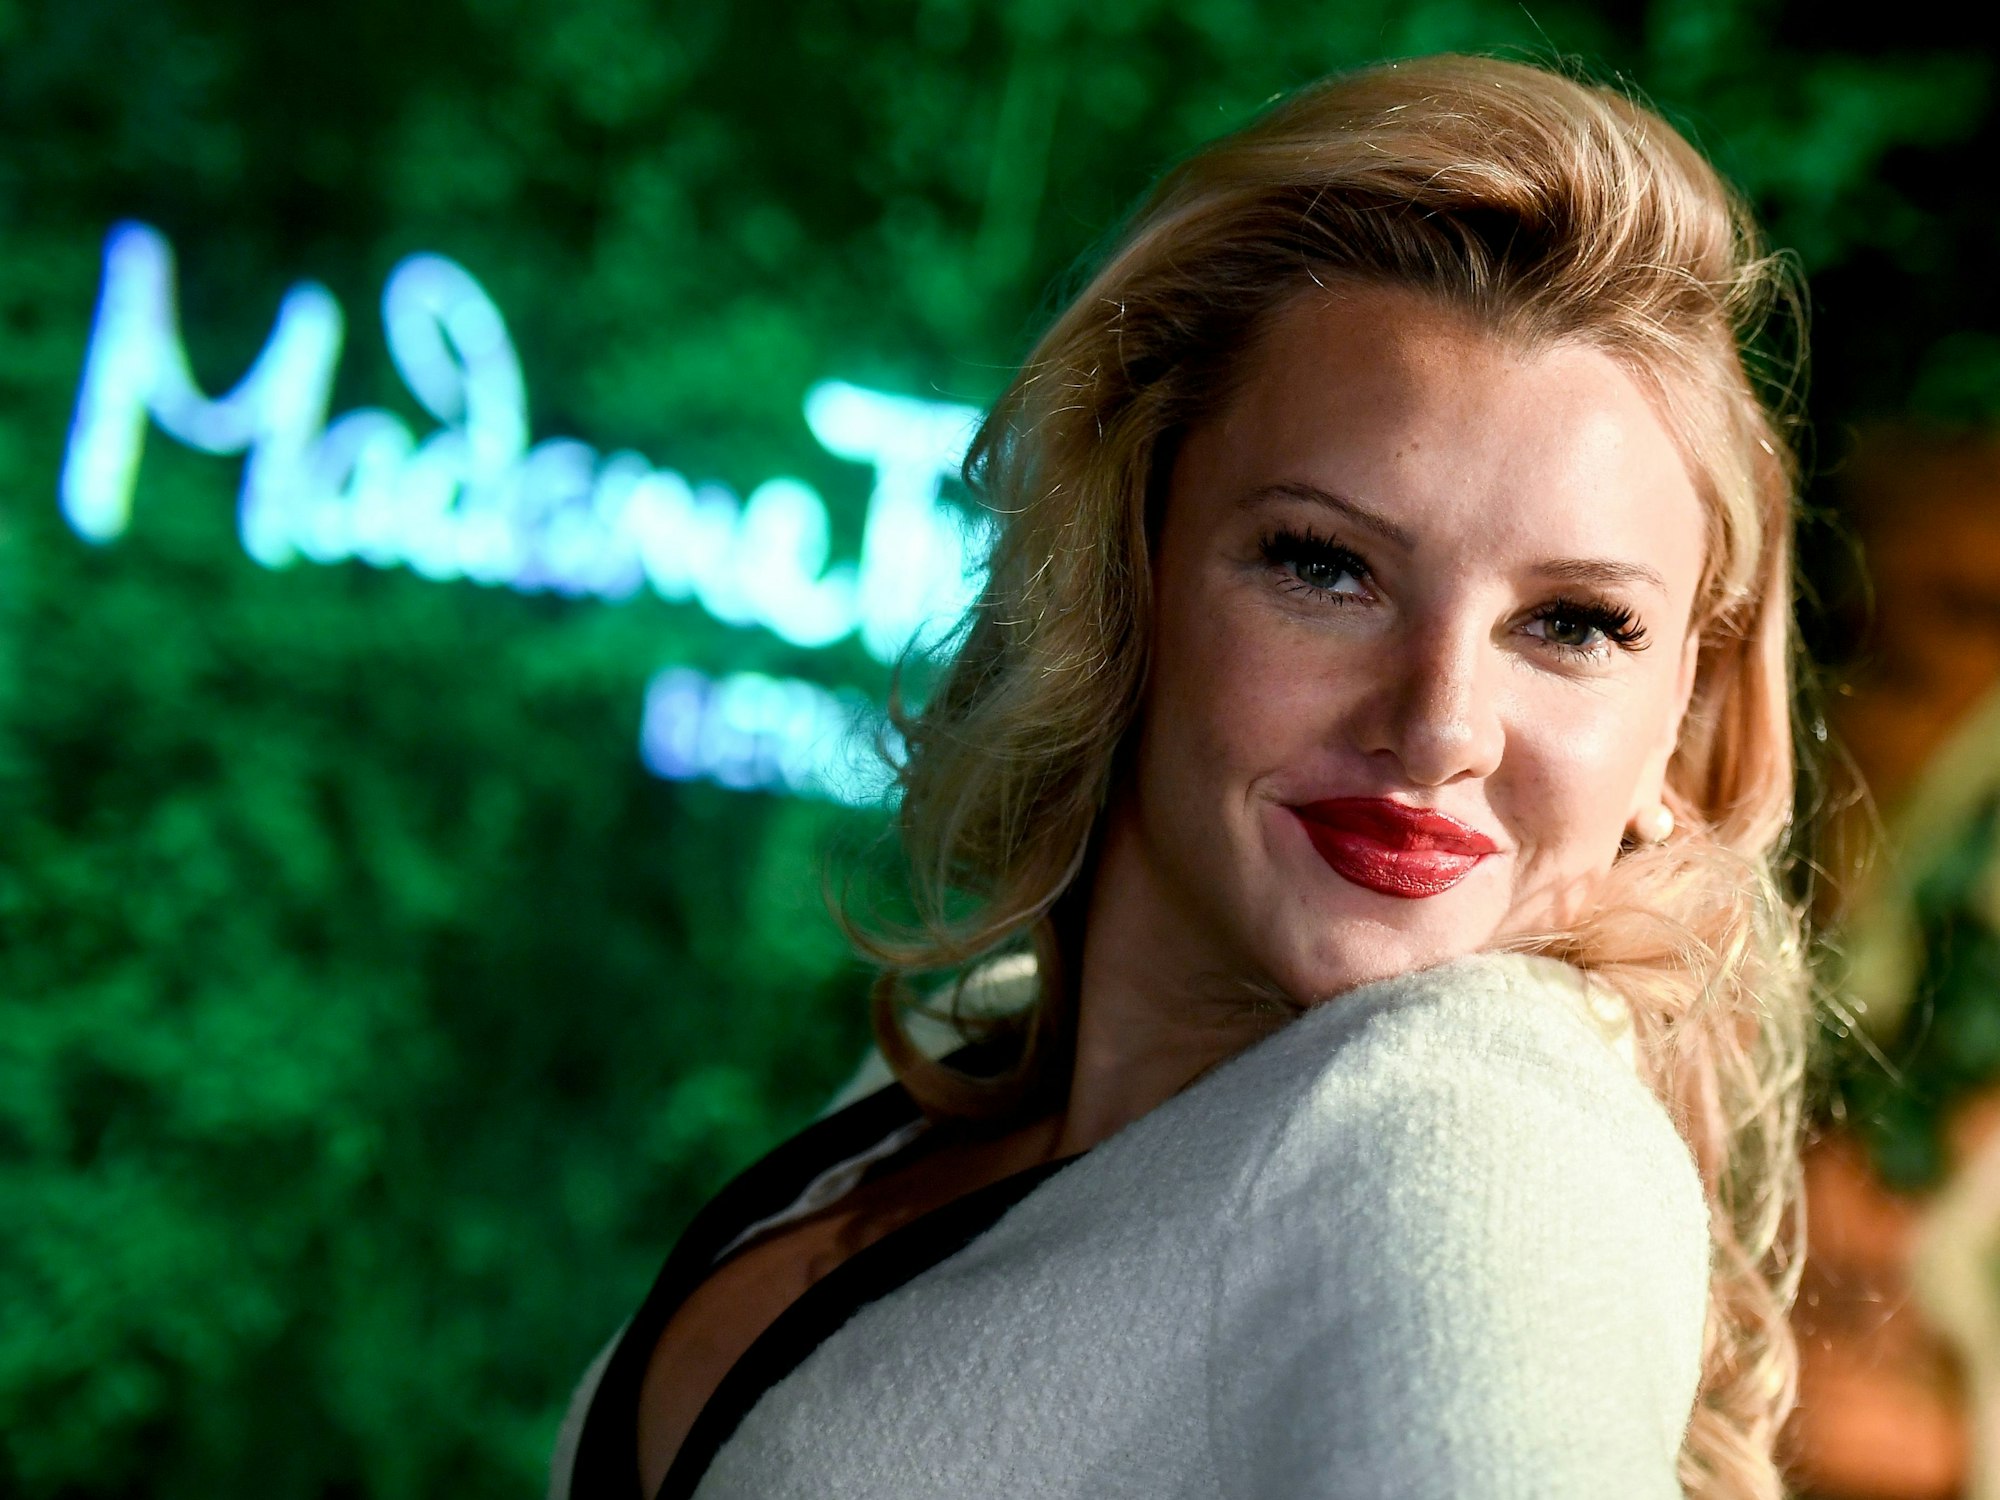 Reality-TV-Sternchen Evelyn Burdecki, Influencerin, steht am 7. Januar 2020 im Madame Tussauds Berlin.